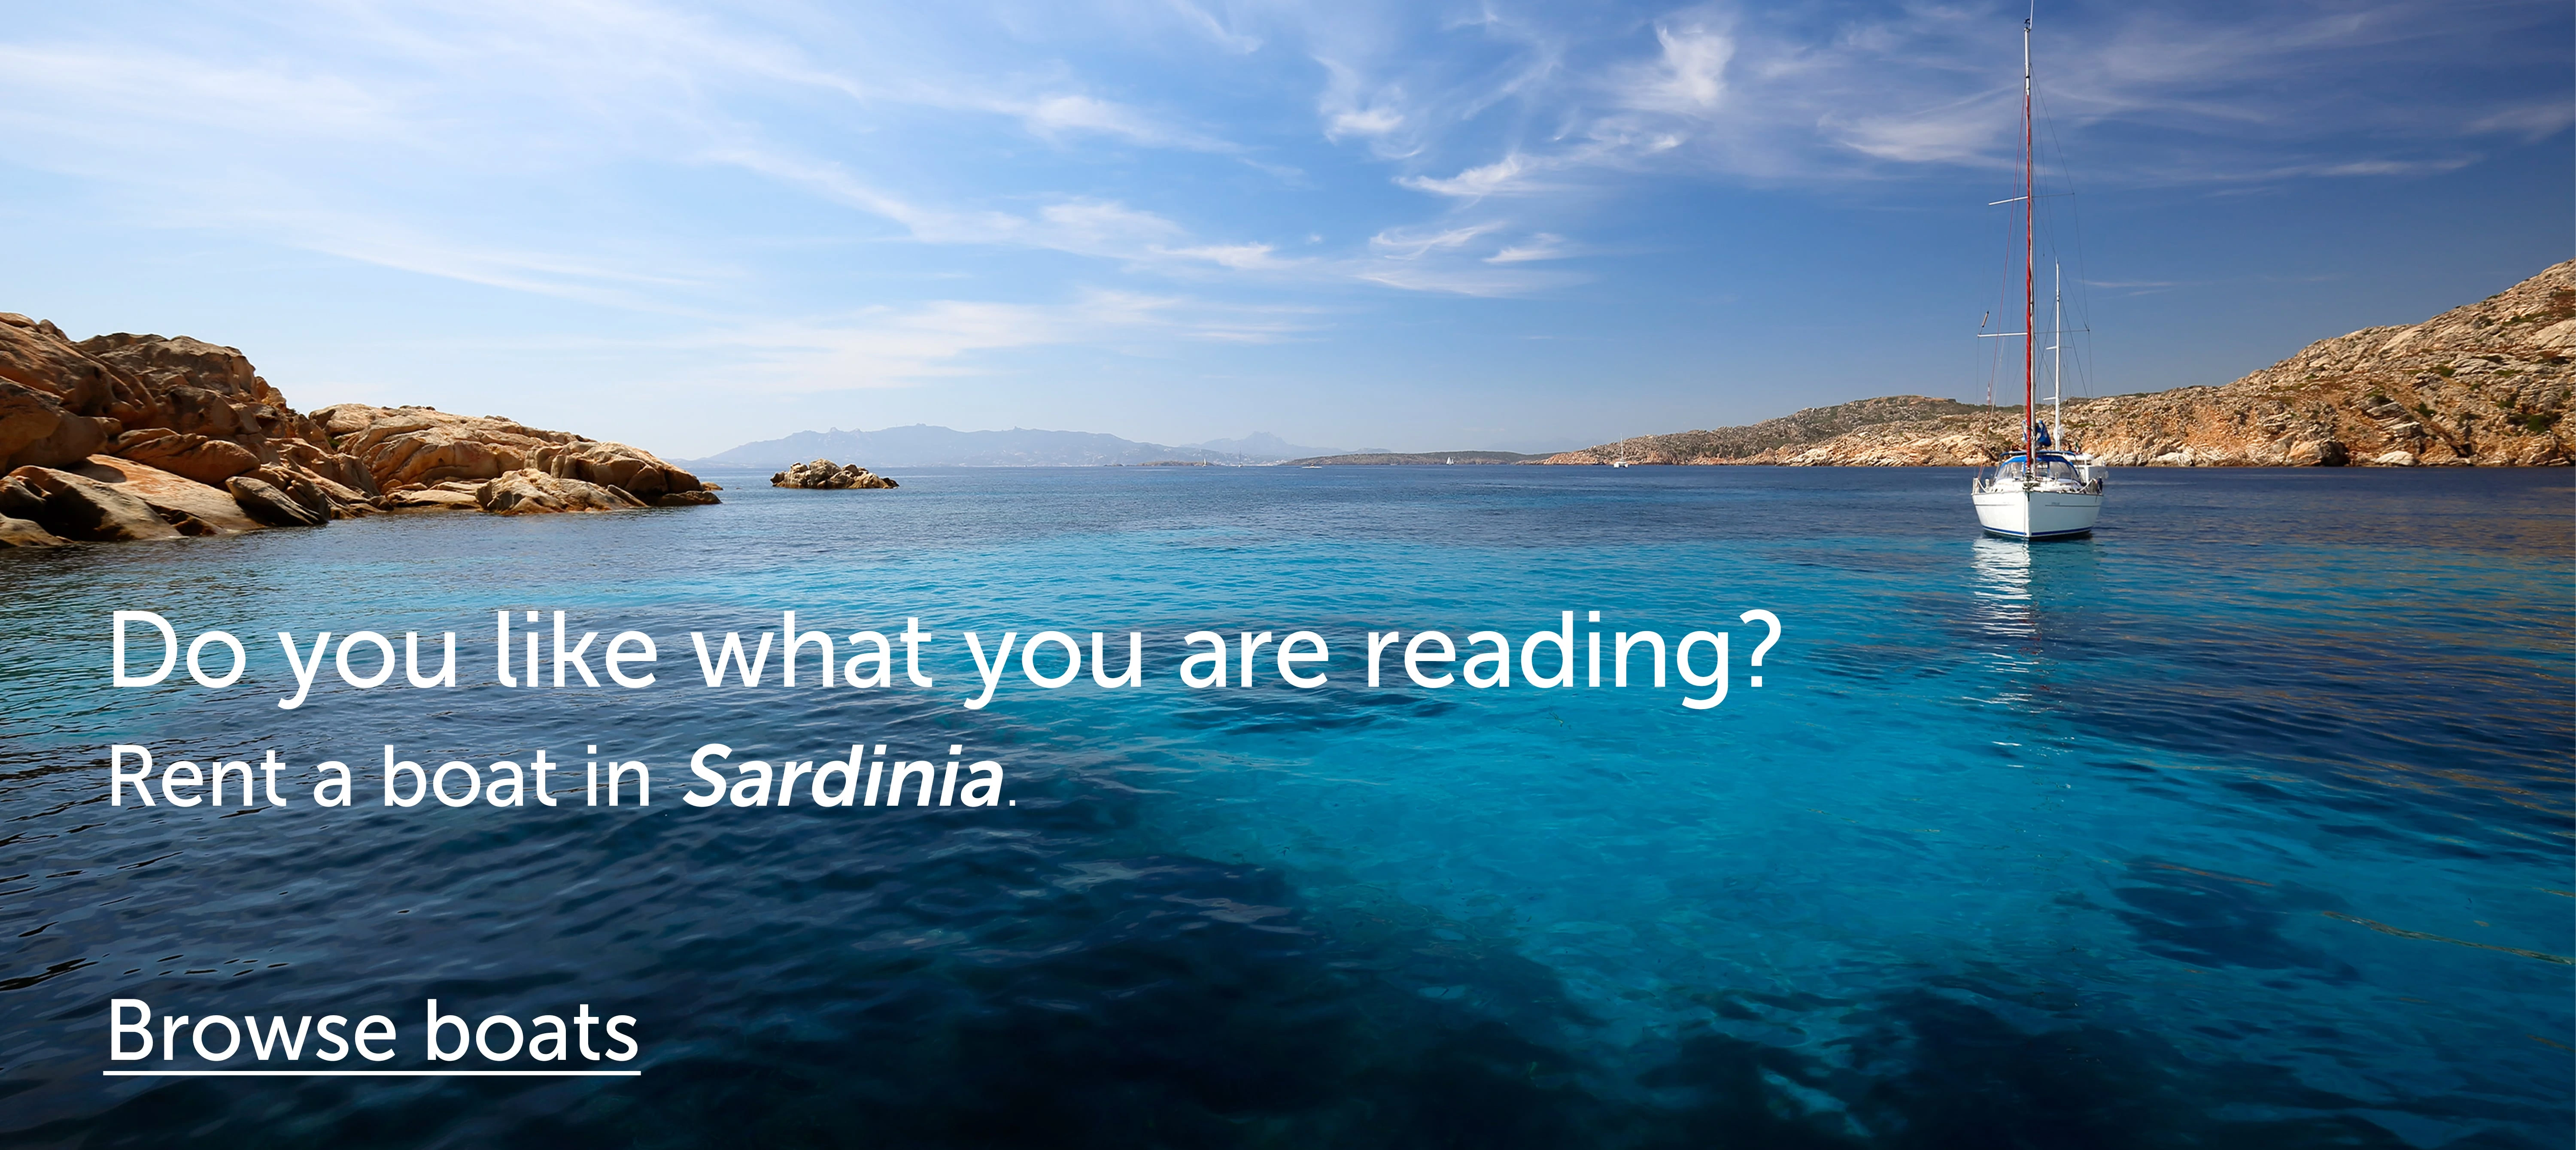 Le acque azzurre della Sardegna ti stanno aspettando